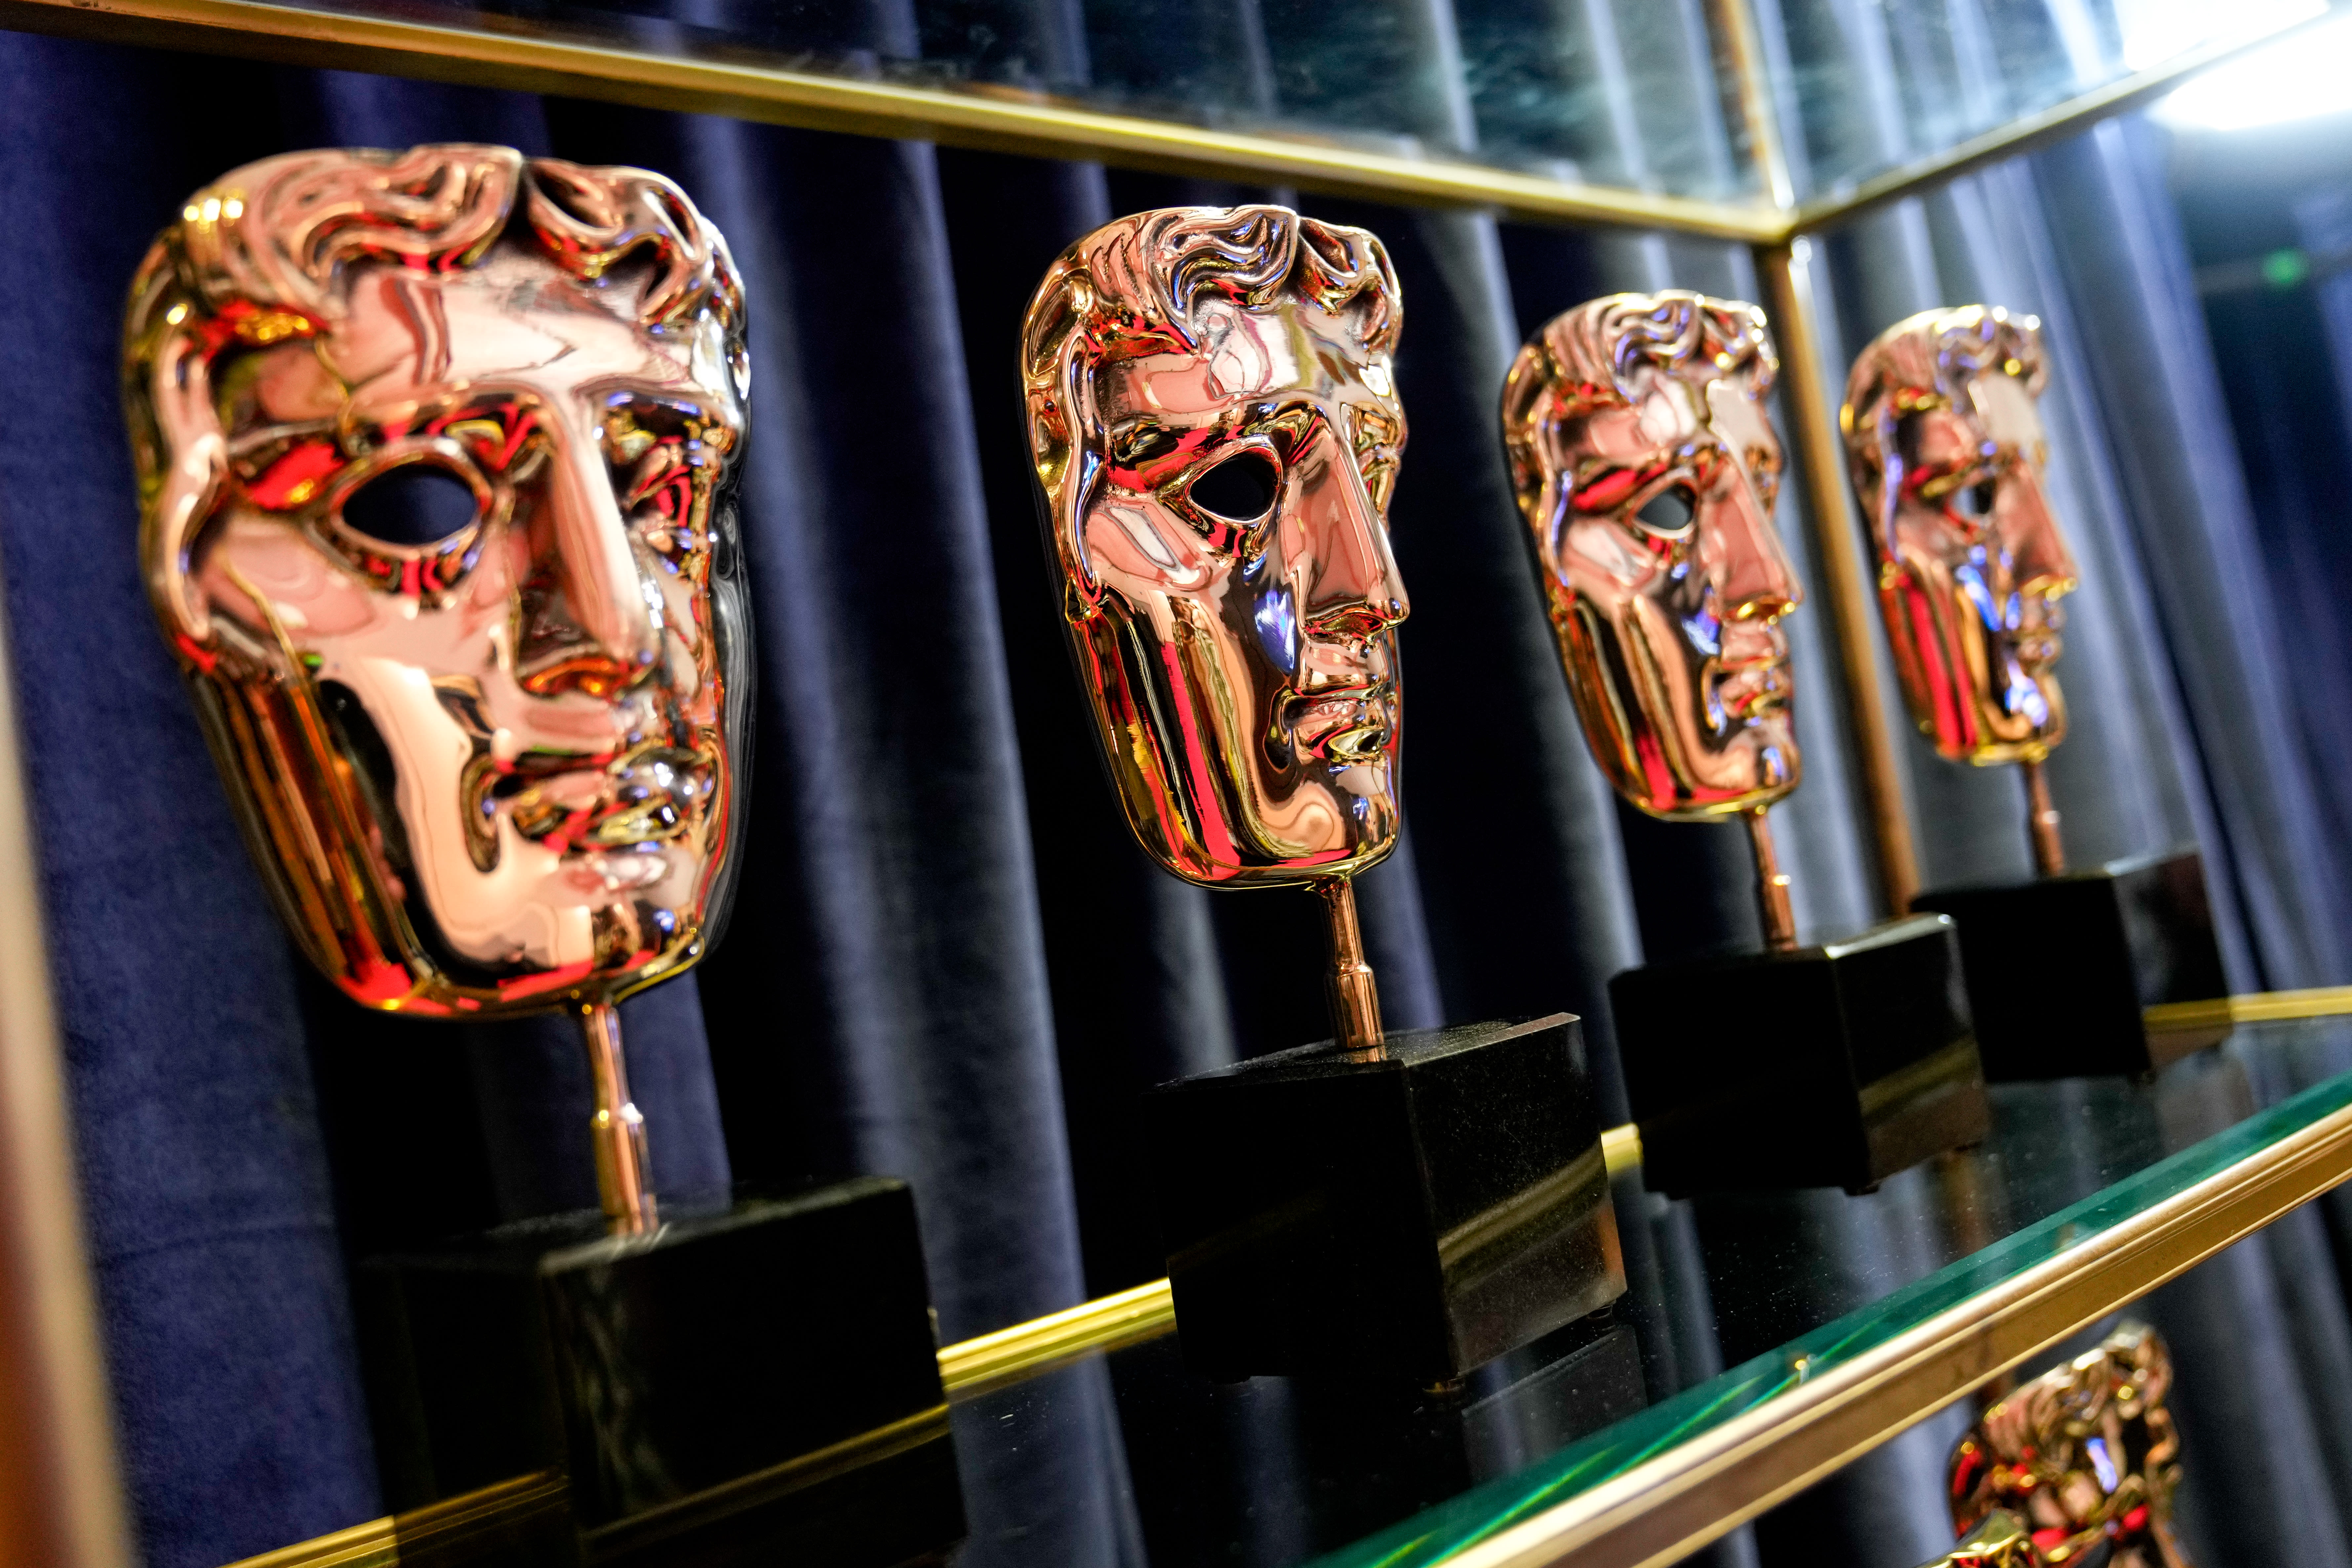 BAFTA TV Awards Winners: Matthew Macfadyen, Netflix’s ‘Top...’s Final Season Leaves Empty-Handed – Full List